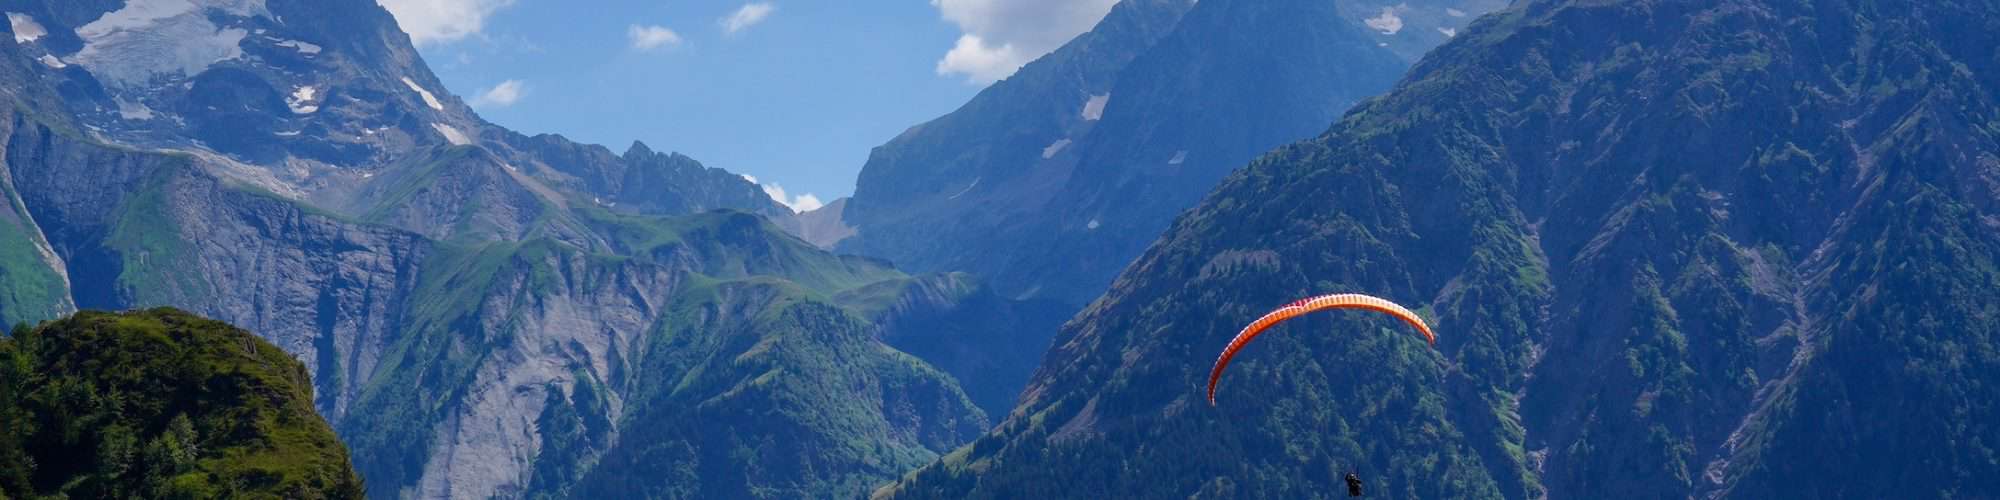 Vacances d’été à la Montagne: direction les 2 Alpes pour un shot de sensations fortes